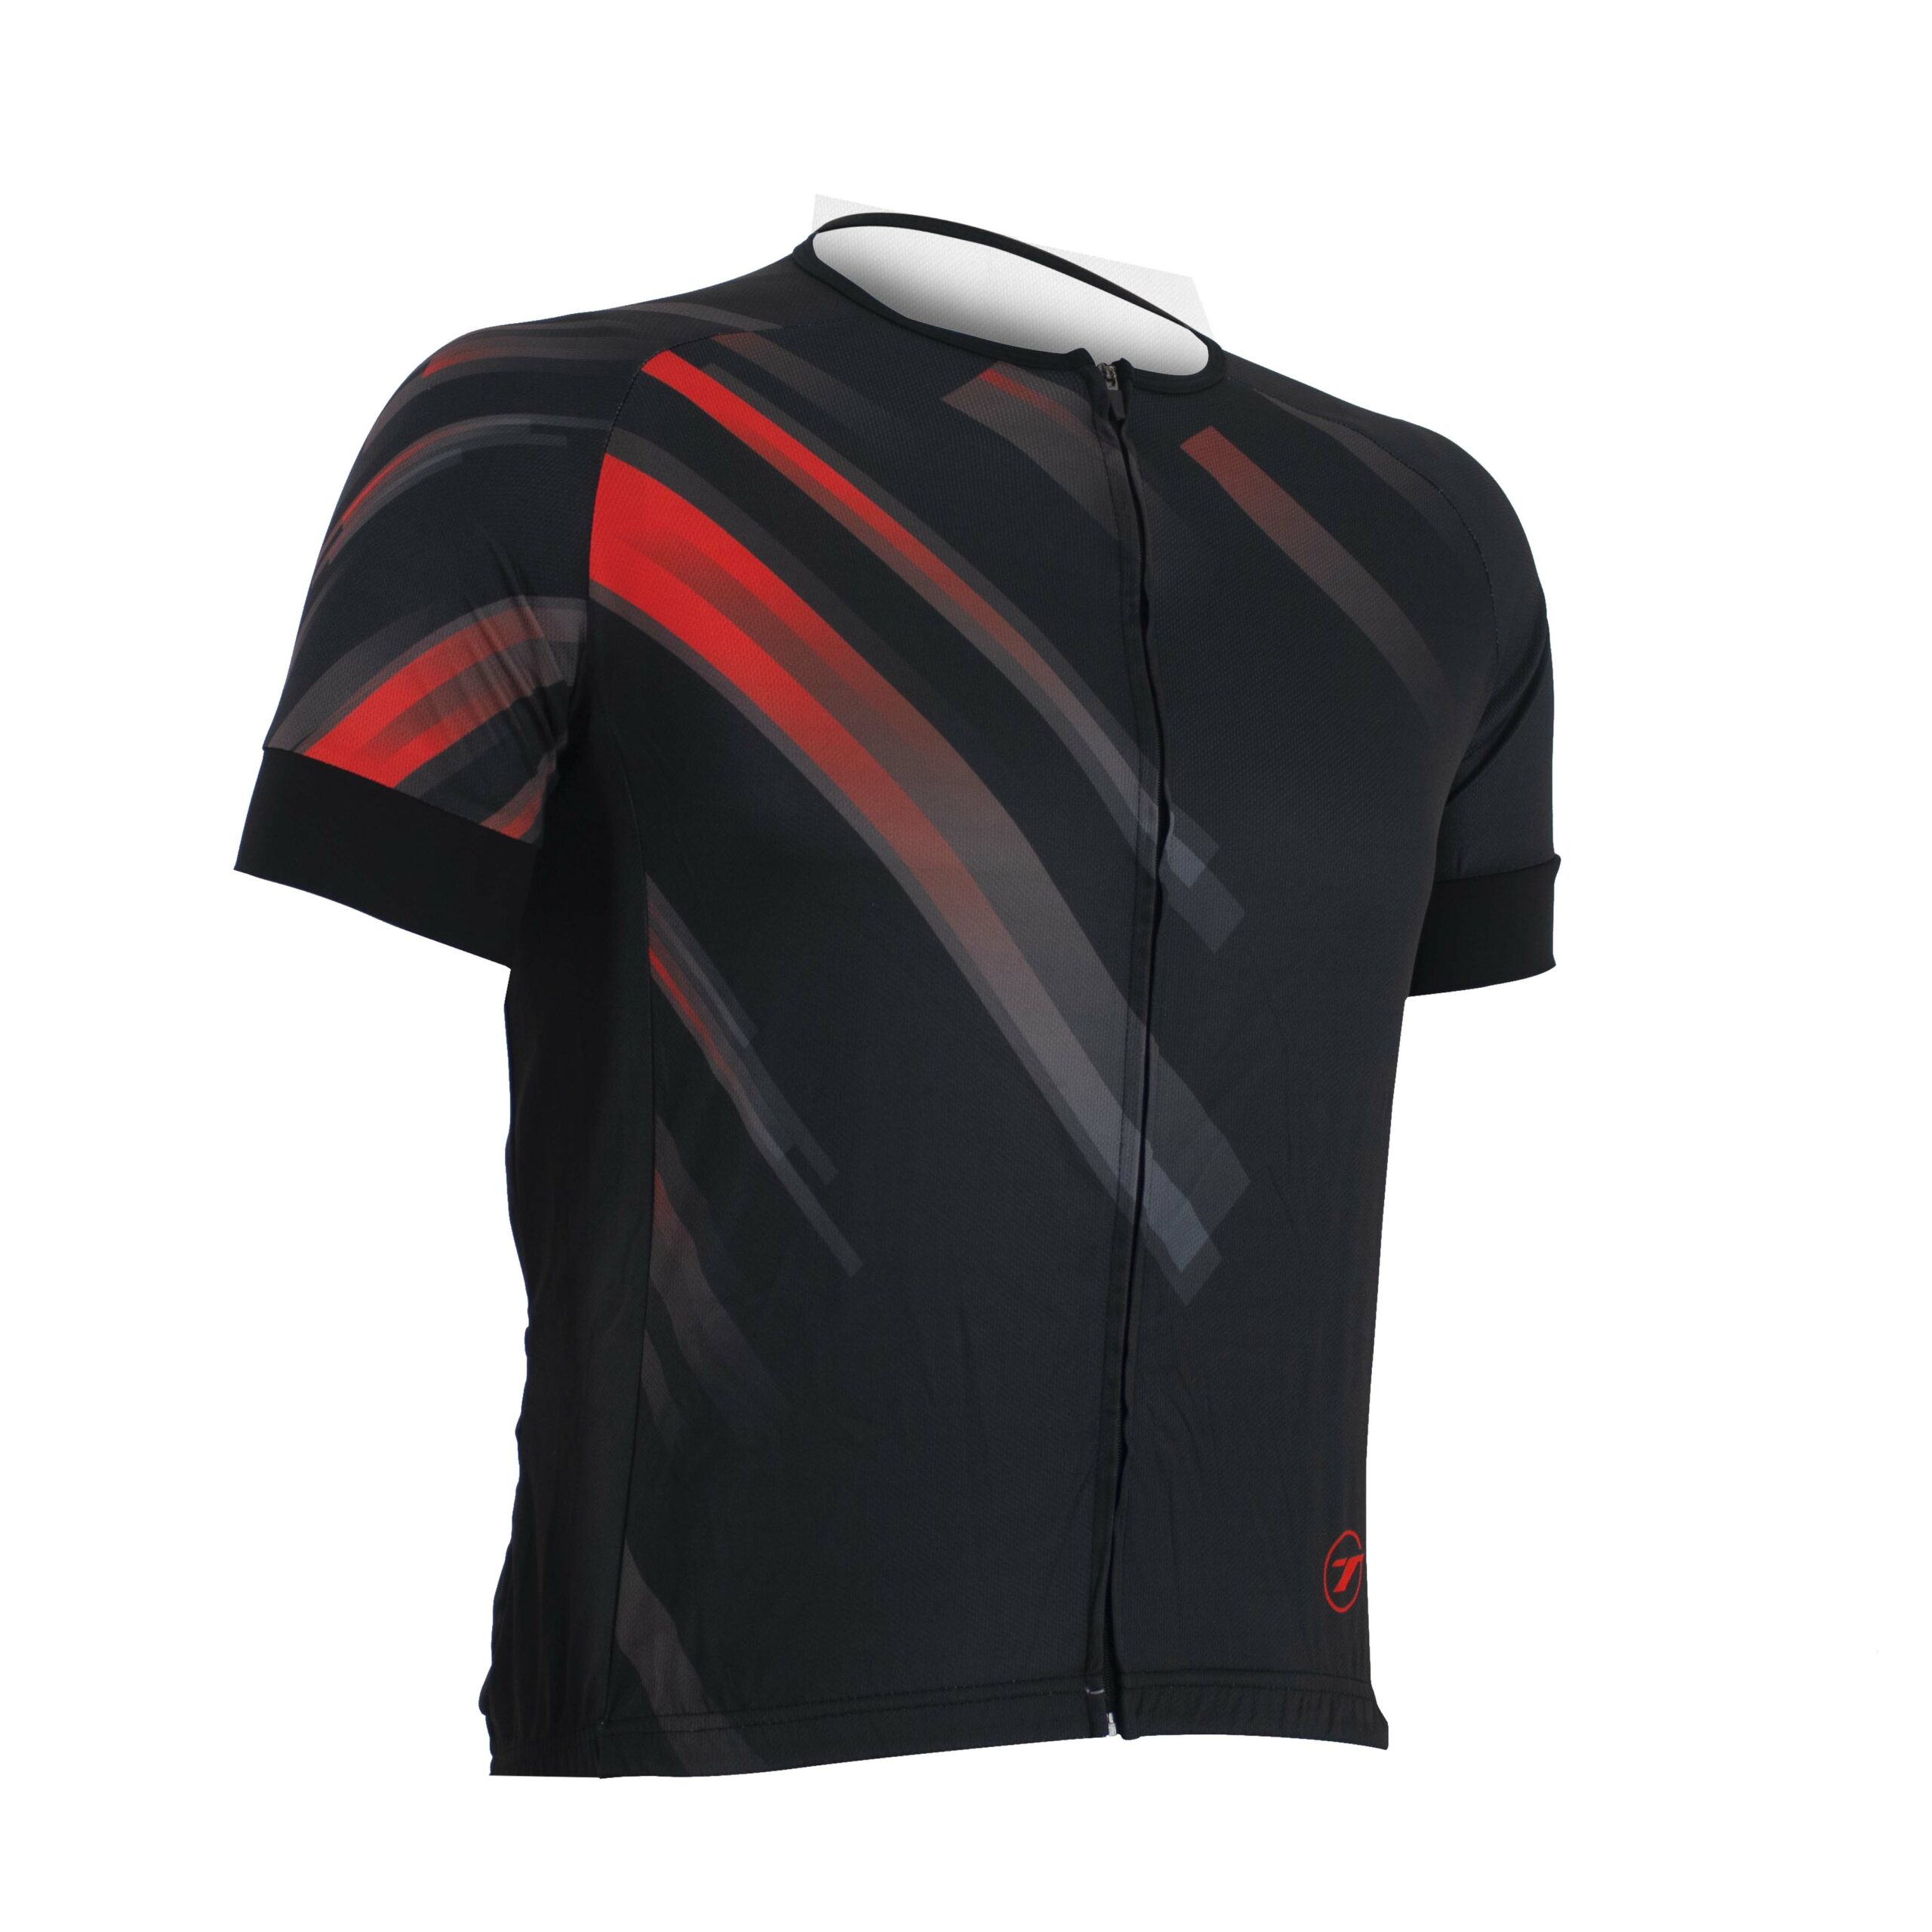 Camisa para ciclismo SUNNY | RIDE LINE - Preto/Vermelho, M